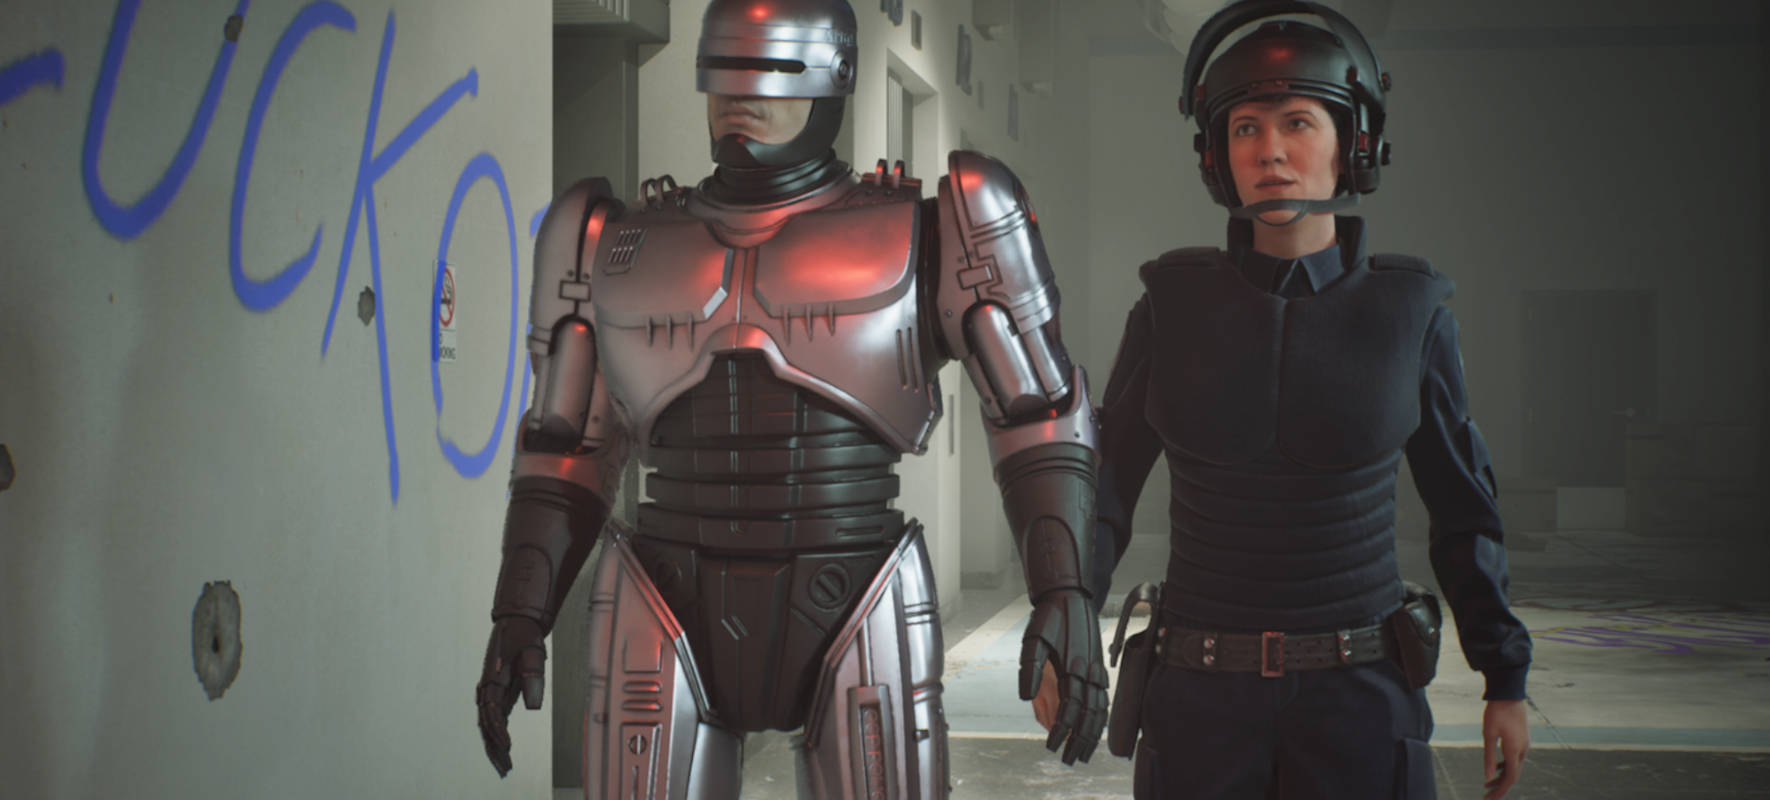 Вышел RoboCop: Rogue City – экшн-шутер про полицейского-полуробота